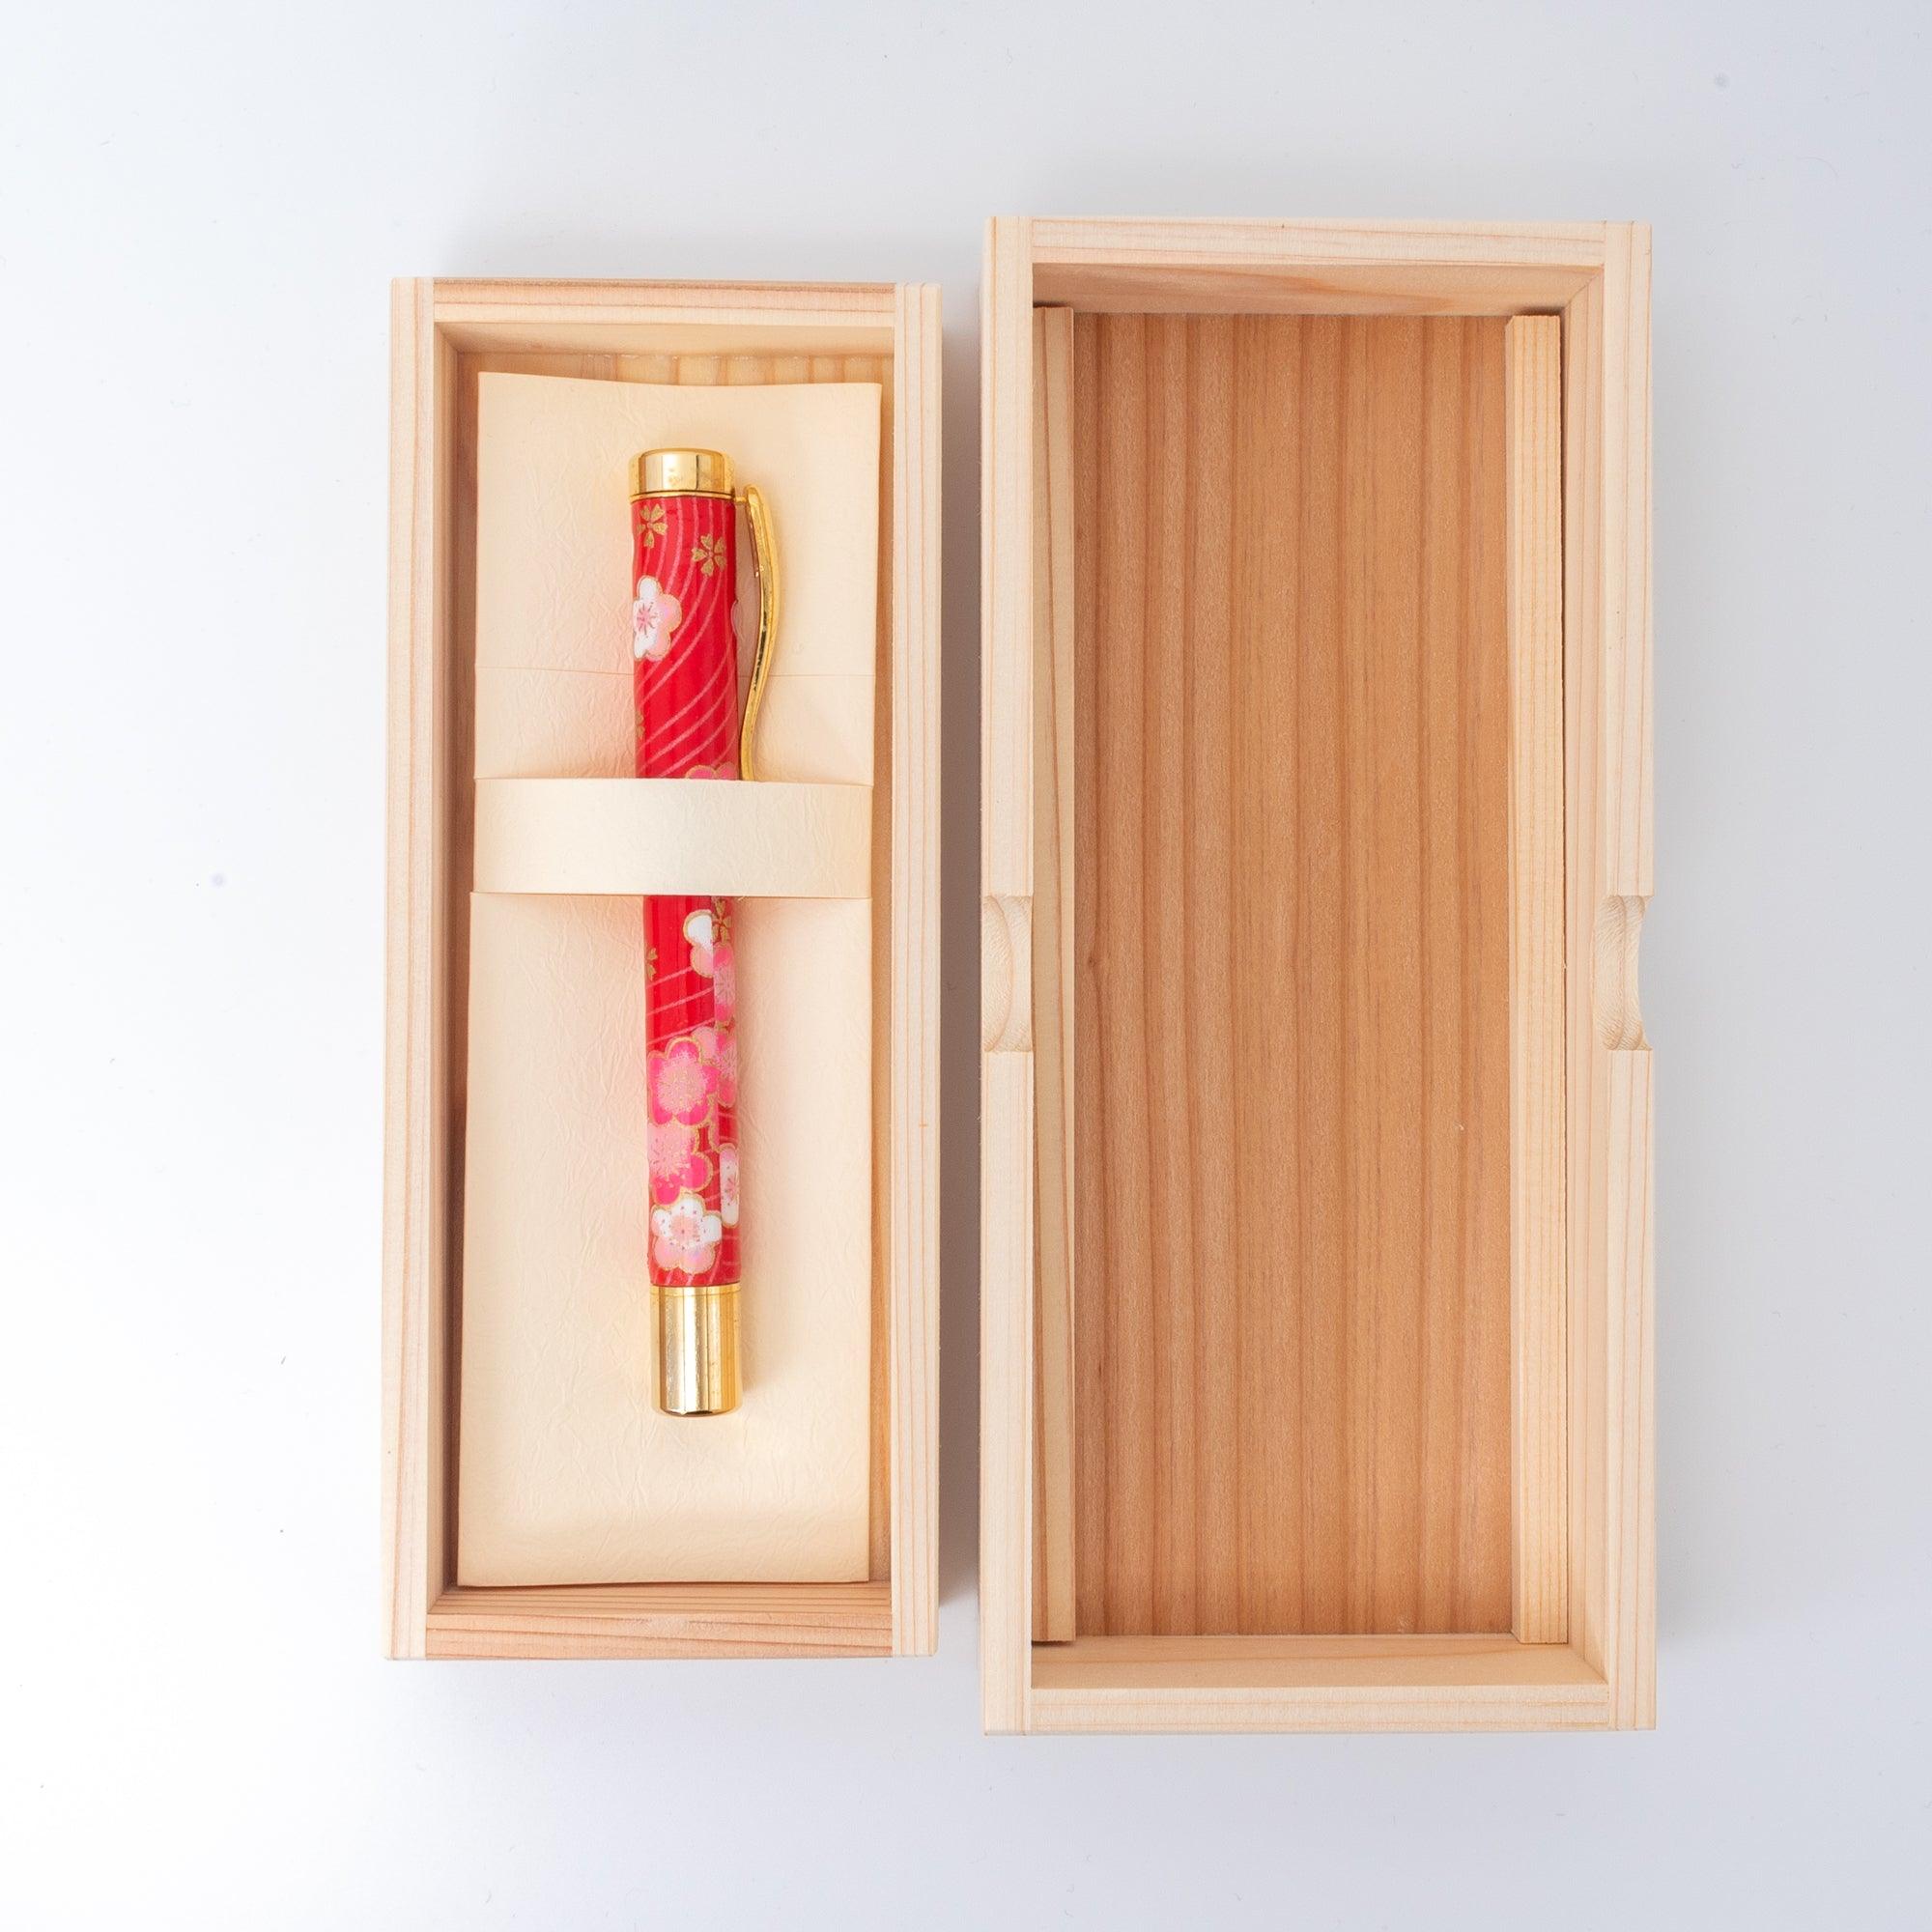 Mino Washi Series Yuzen Plum Fountain Pen - Haruki Takeuchi - Komorebi Stationery